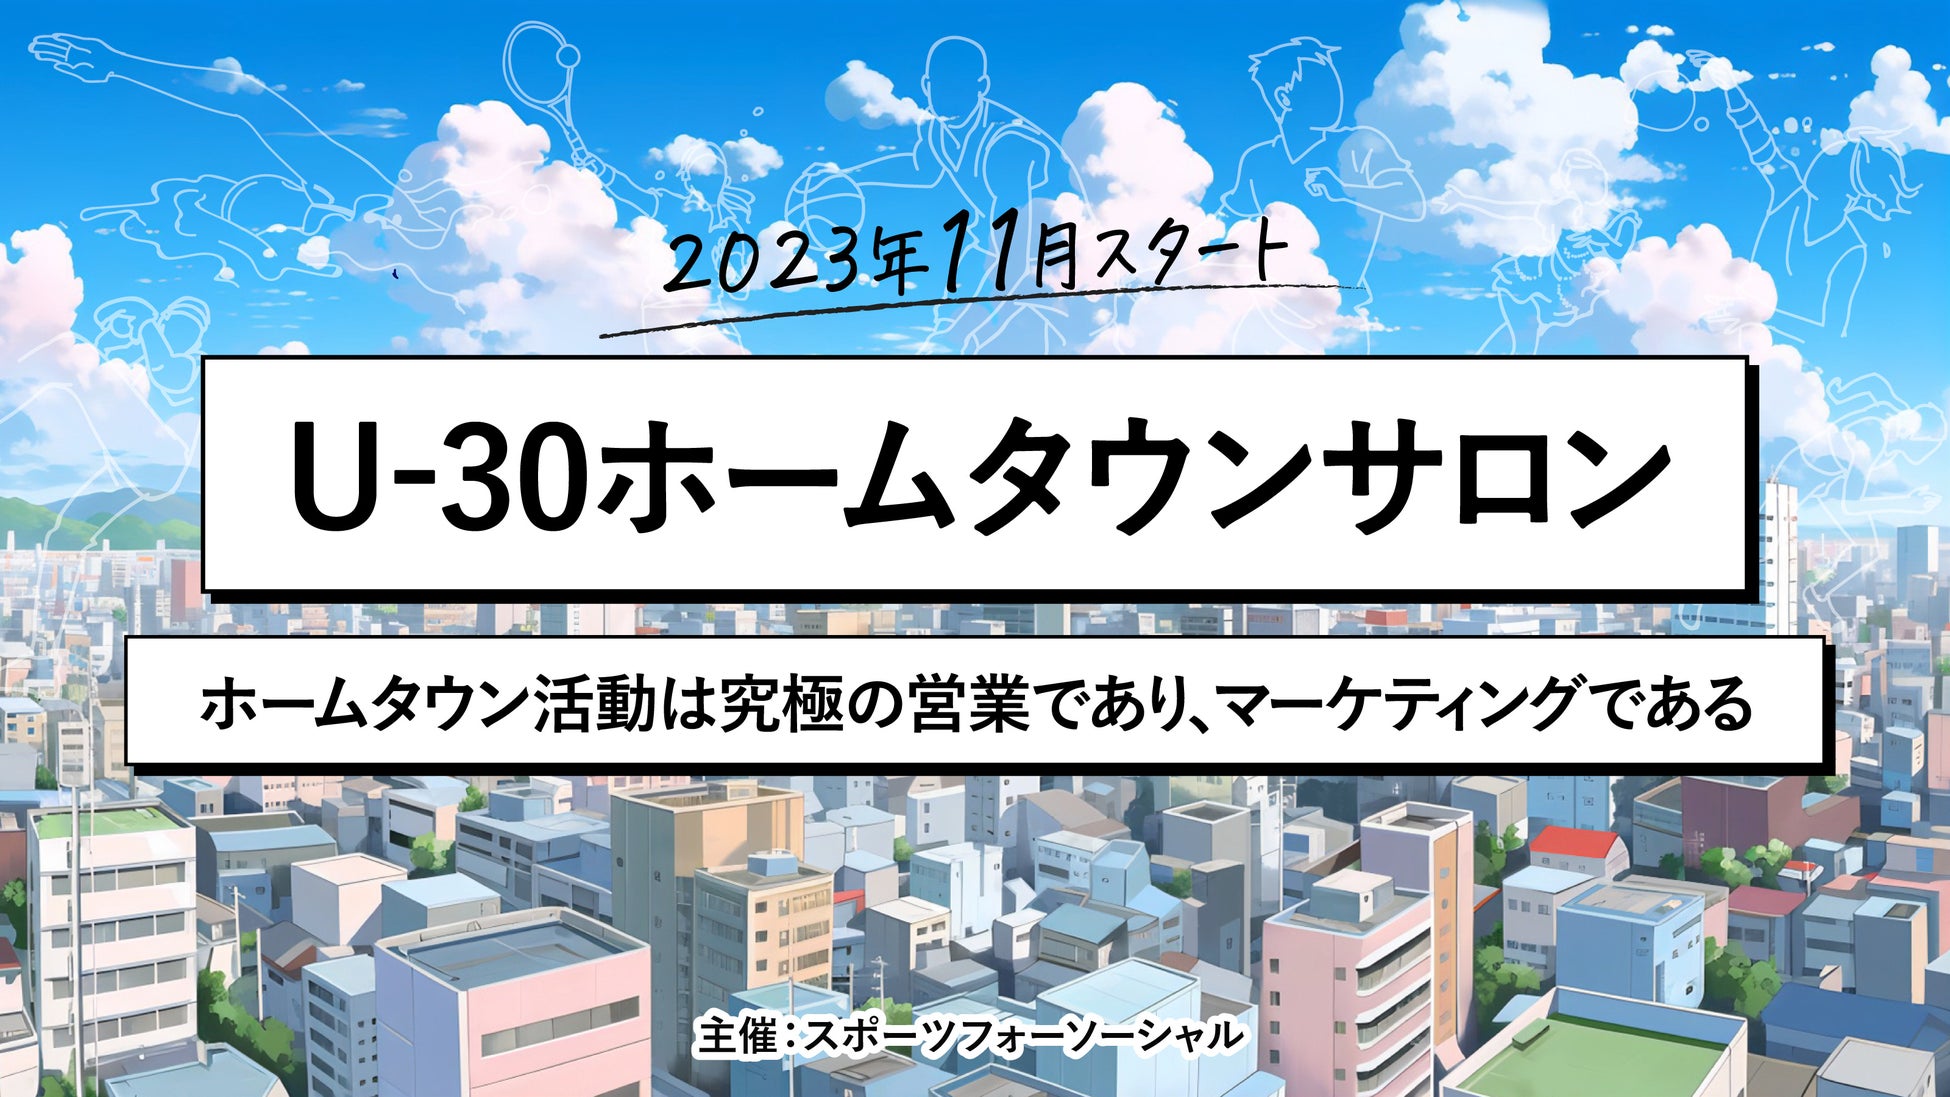 三井アウトレットパーク 木更津で開催される「GOLF FES」にPXGポップアップショップがオープン